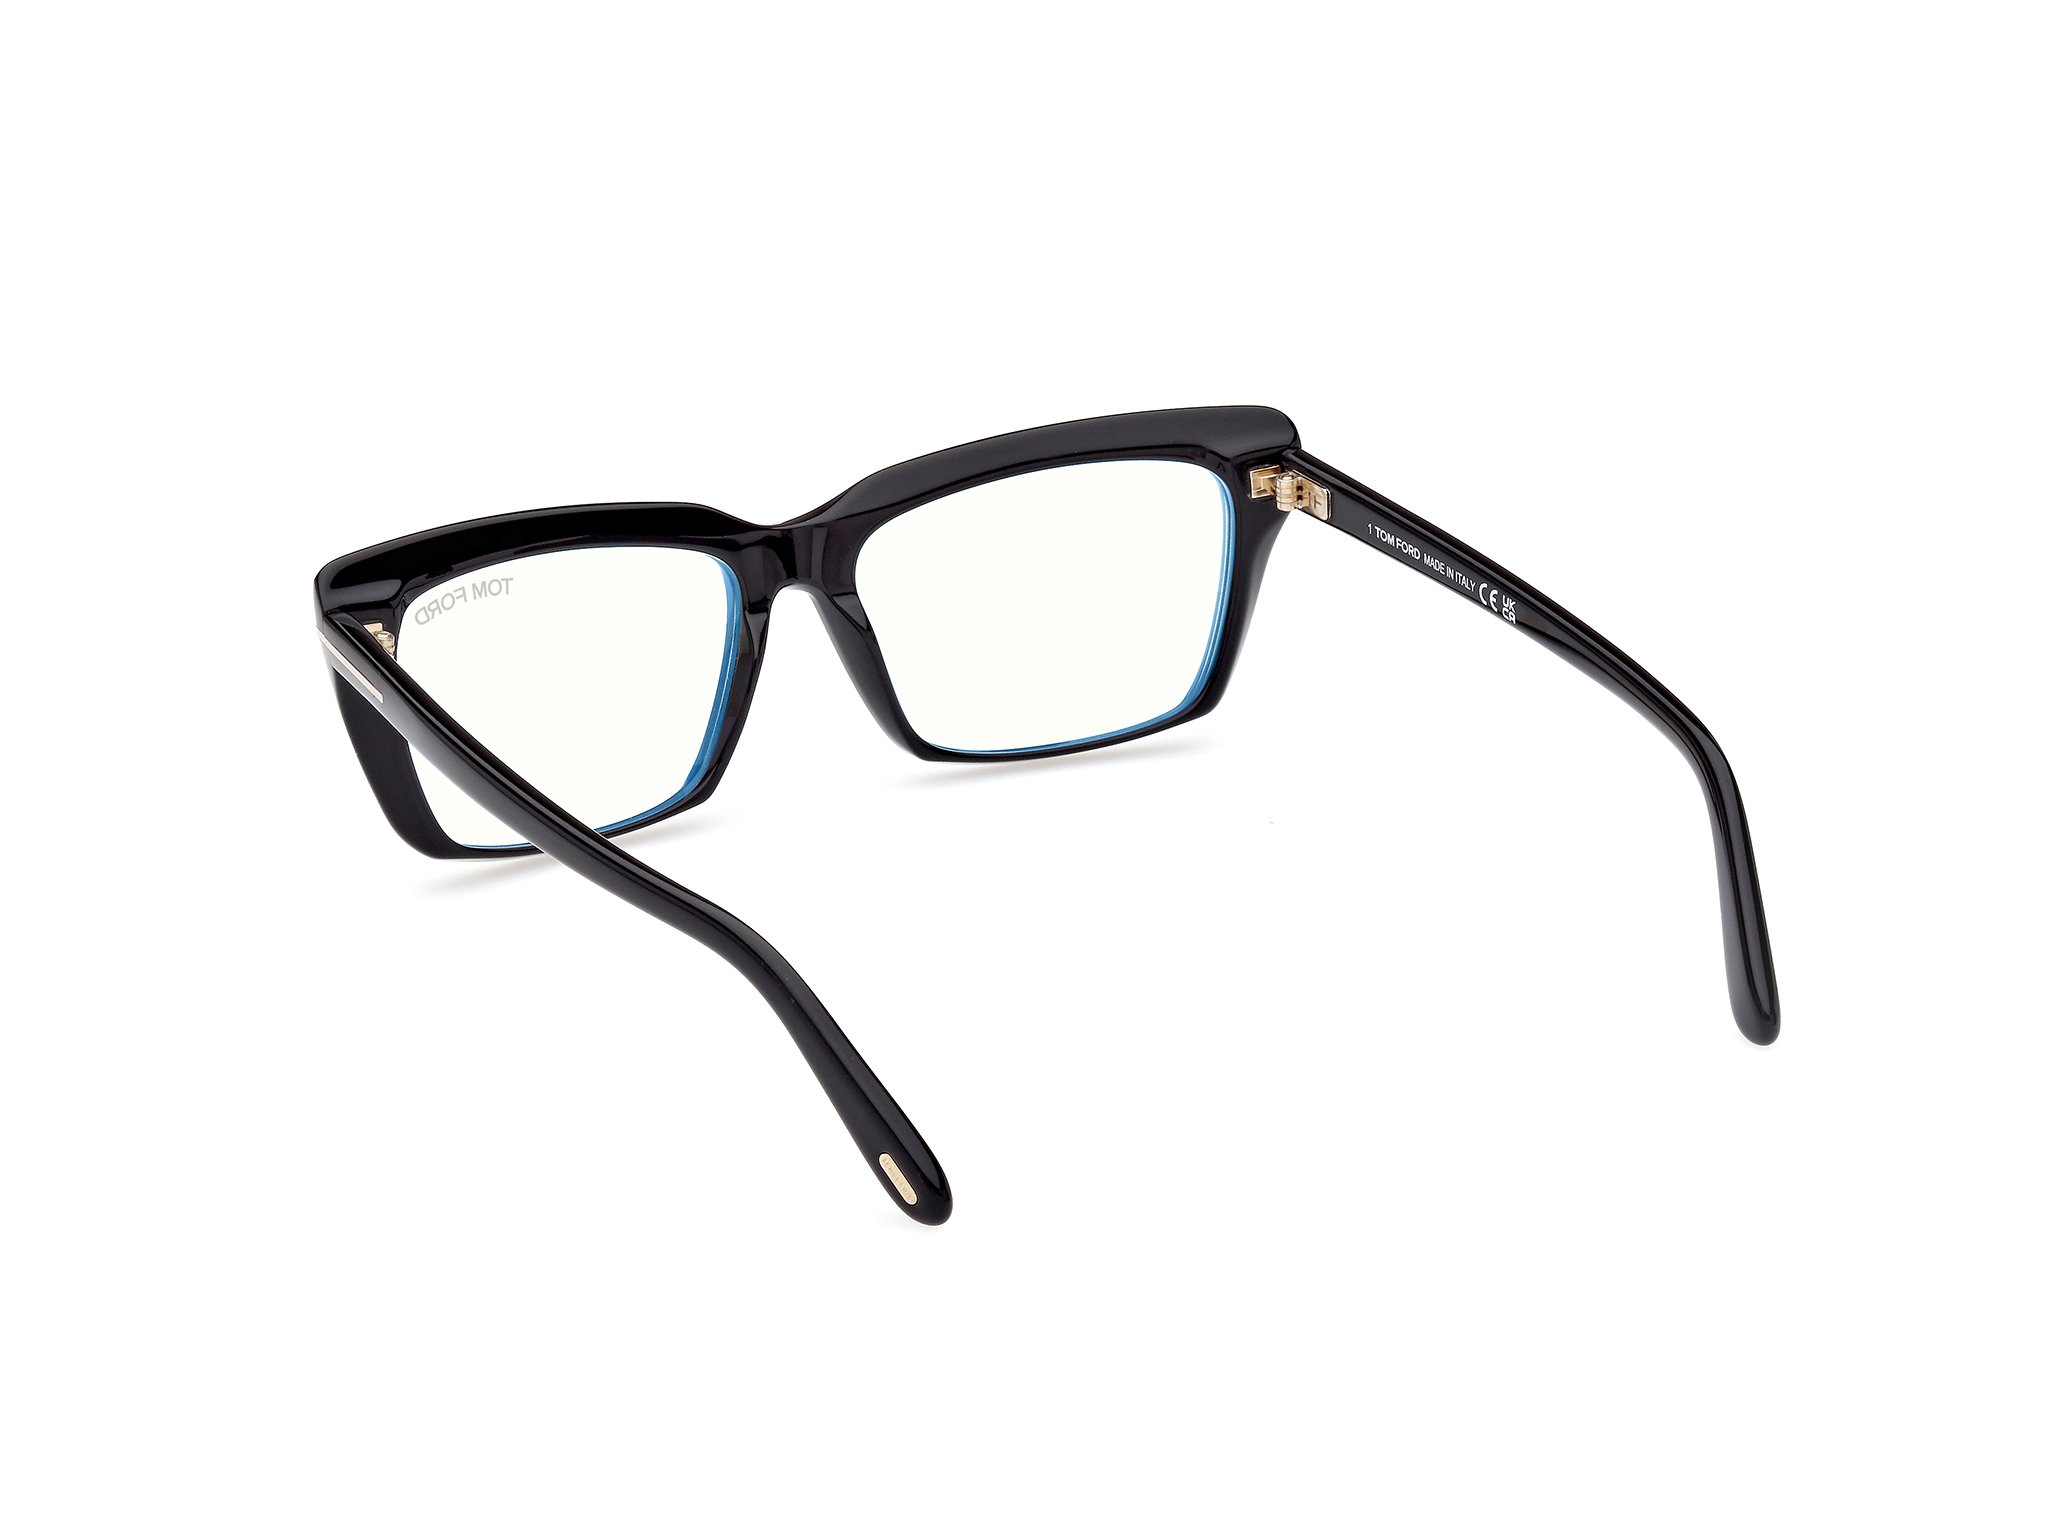 Das Bild zeigt die Korrektionsbrille FT5894-B 001 von der Marke Tom Ford in schwarz.